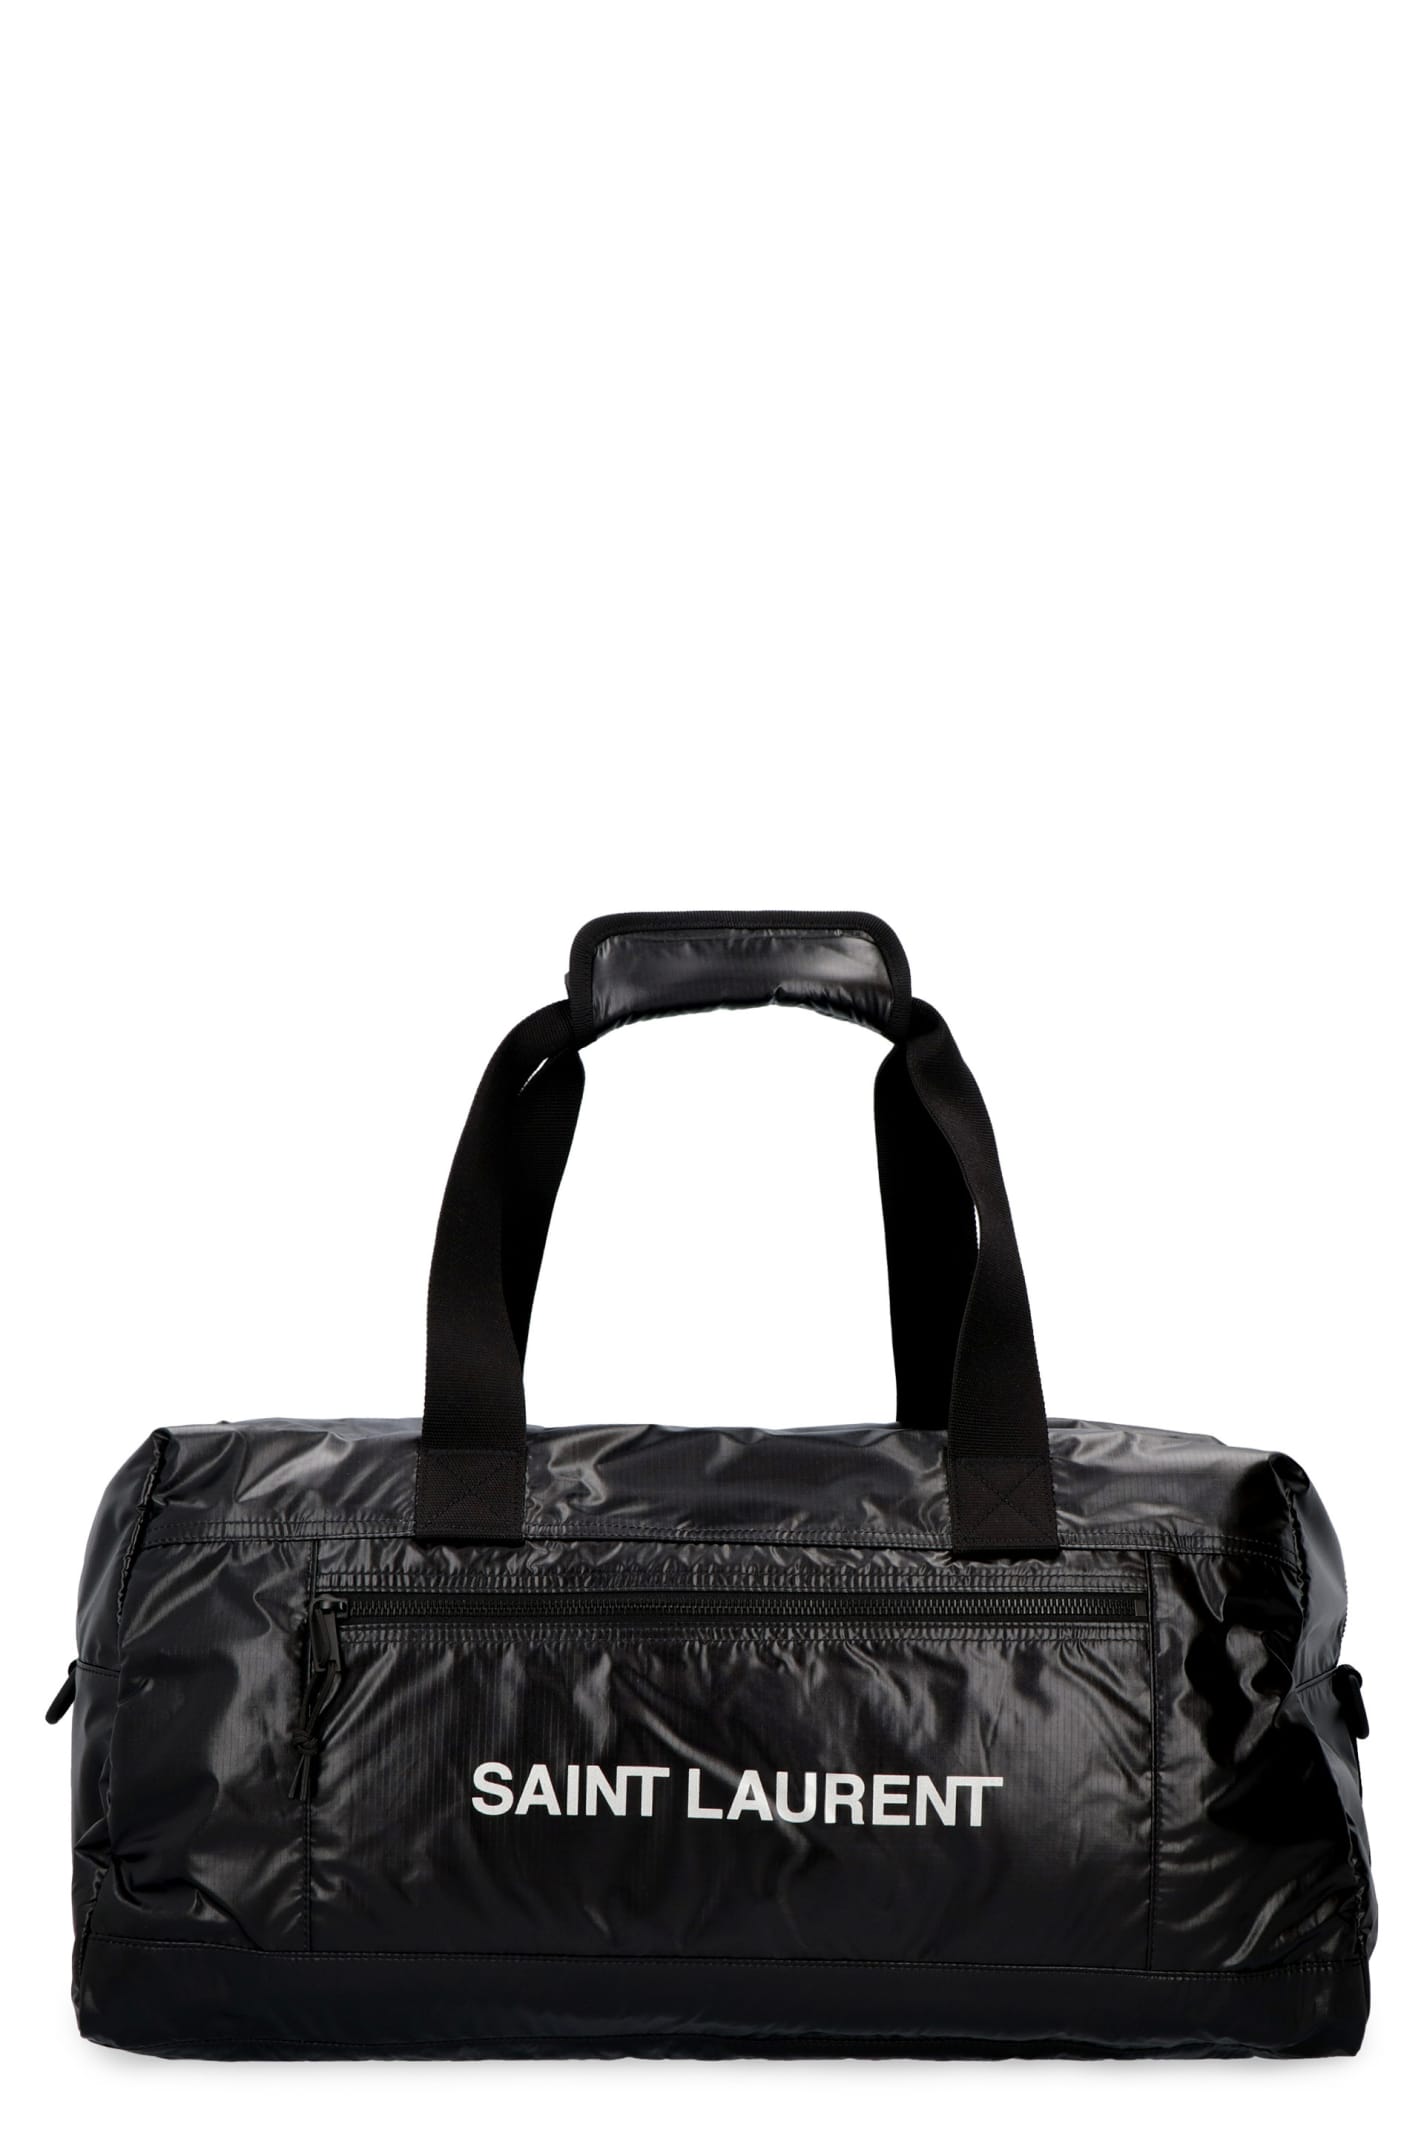 Saint Laurent Nuxx Nylon Travel Bag